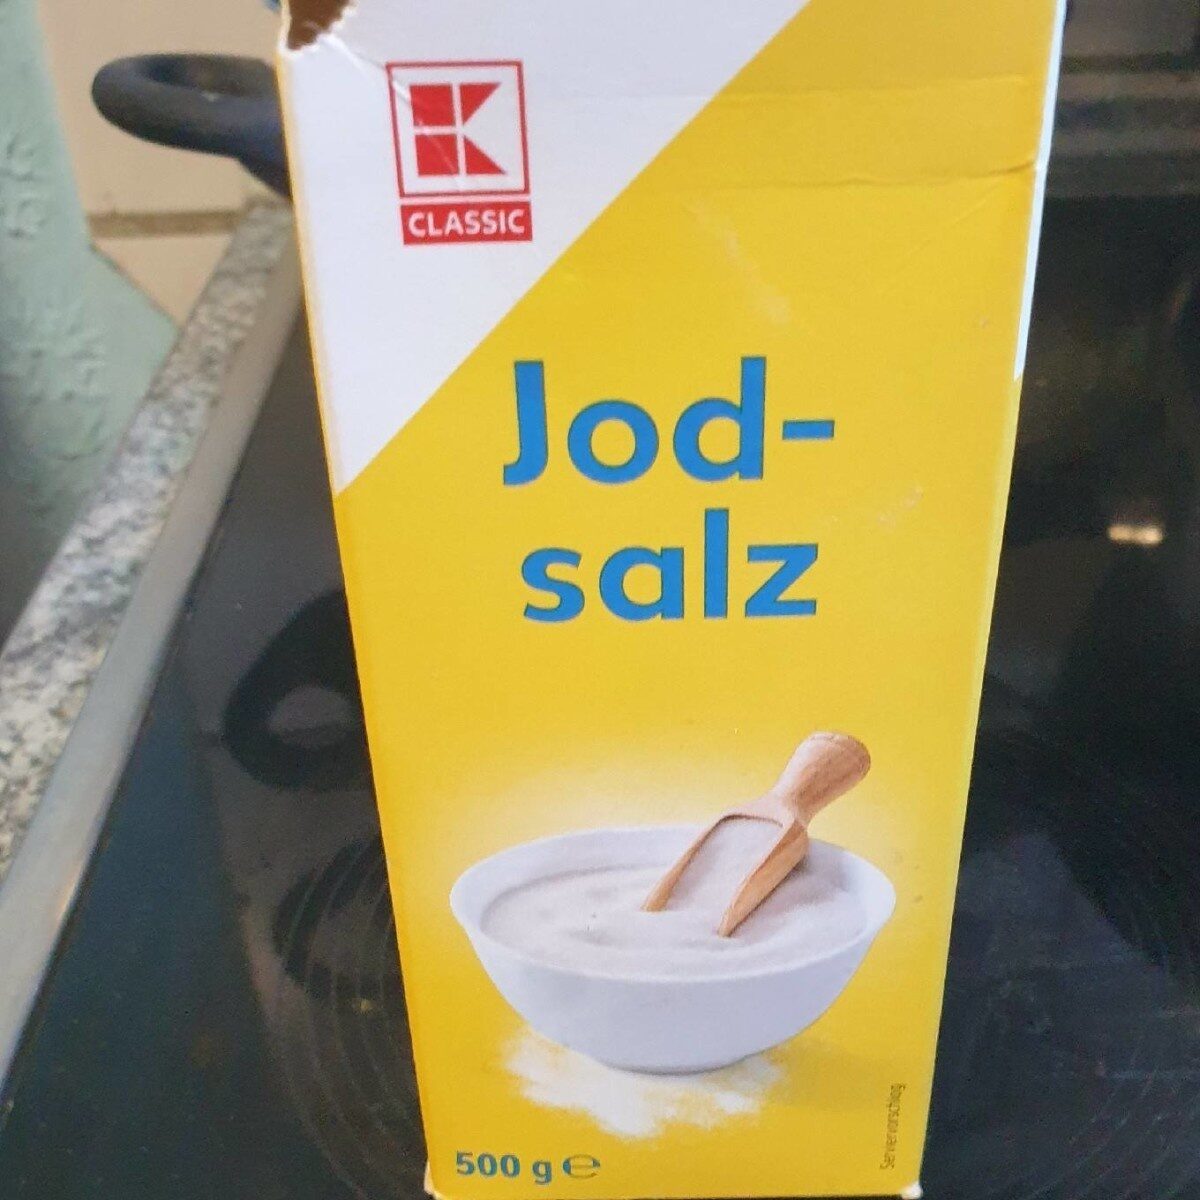 Jod Salz - Product - en